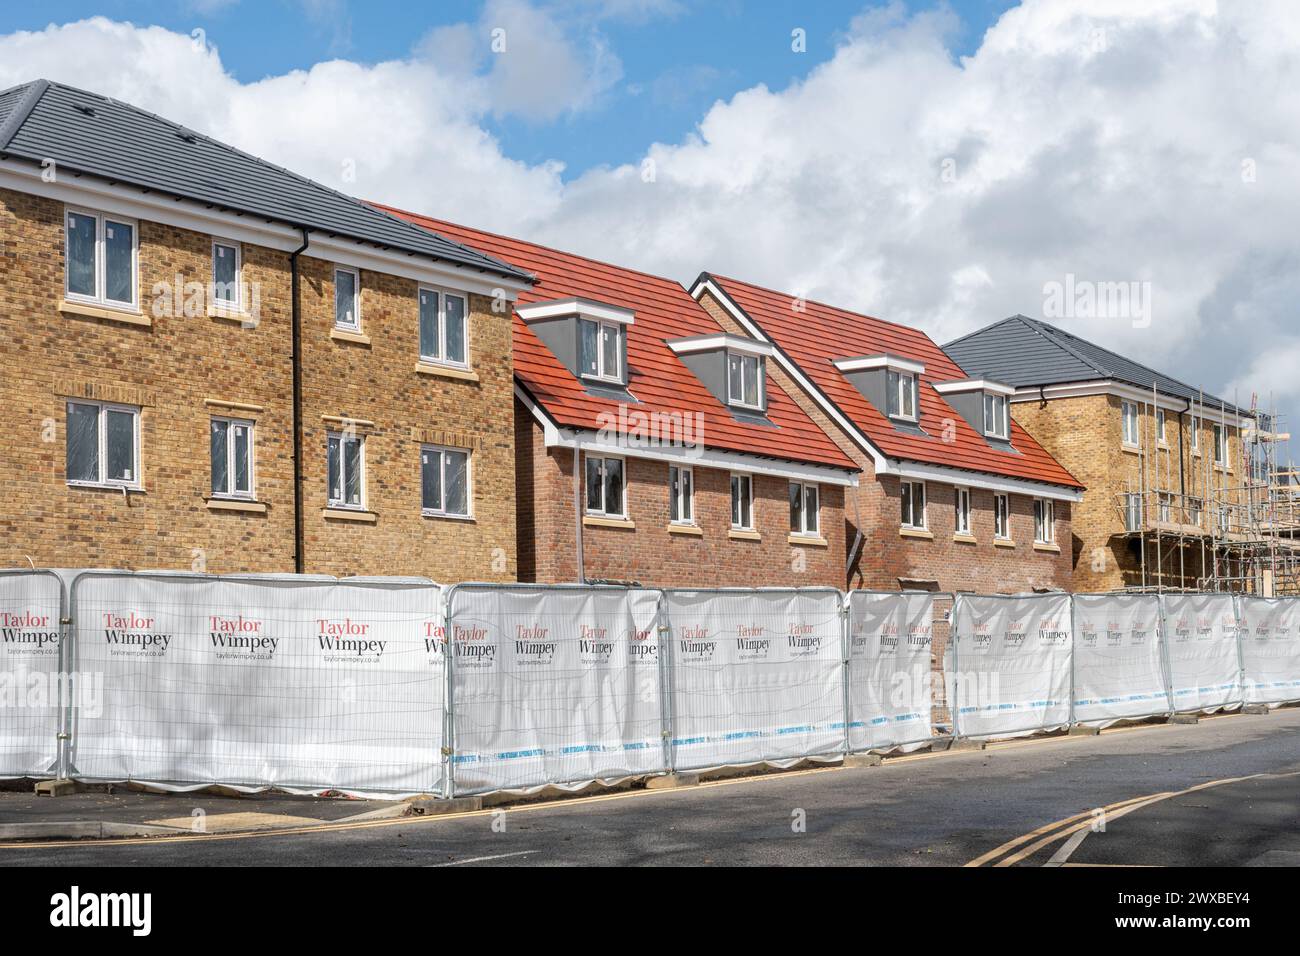 Sviluppo di nuove abitazioni da parte di Taylor Wimpey chiamato Heatherwood Royal, Ascot, Berkshire, Inghilterra, Regno Unito Foto Stock